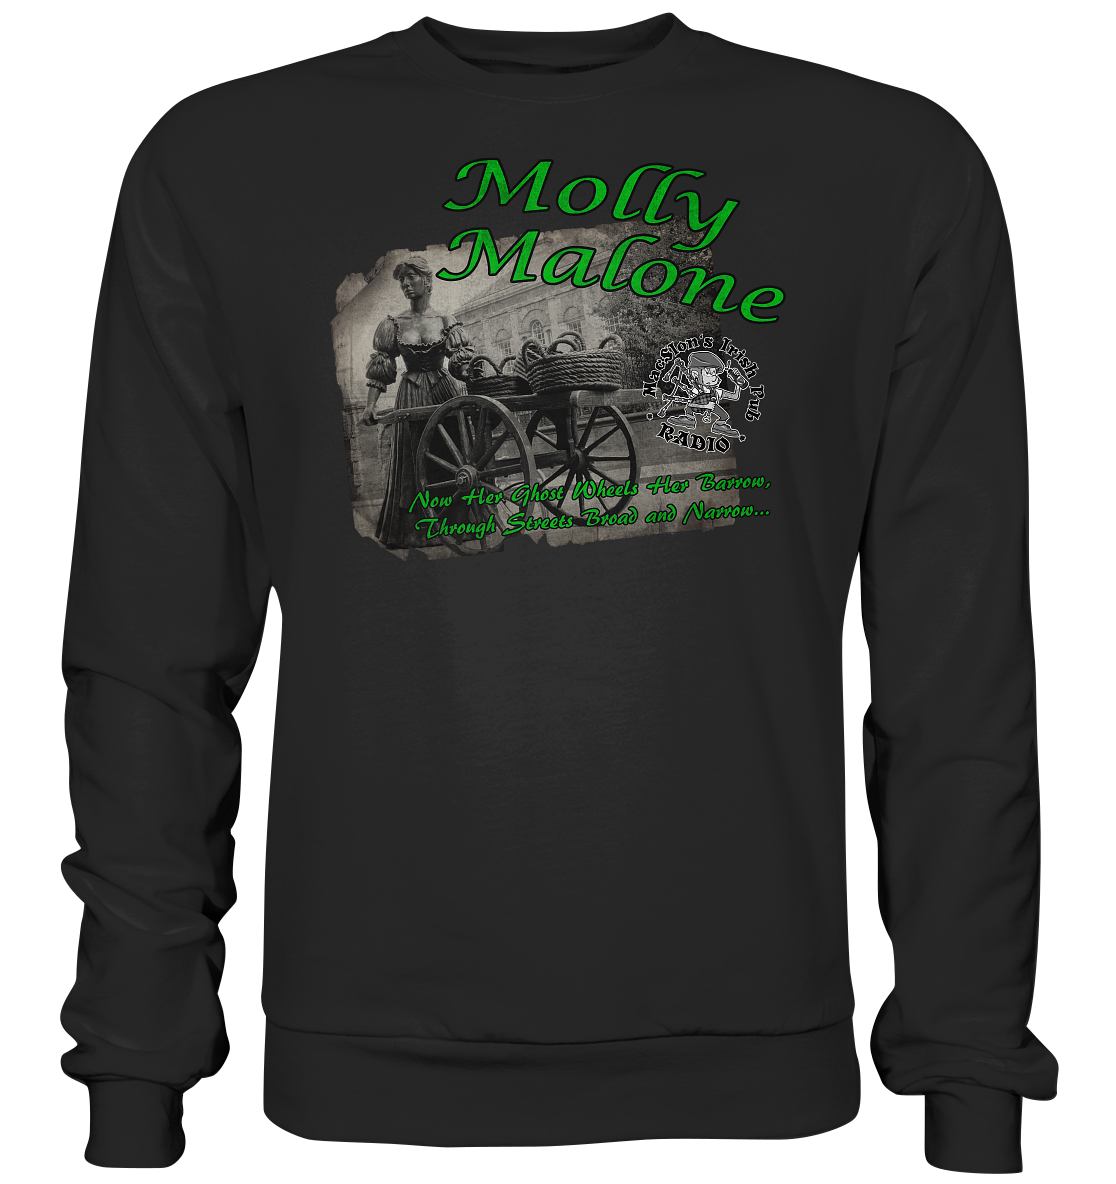 MacSlon's "Molly Malone" - Basic Sweatshirt